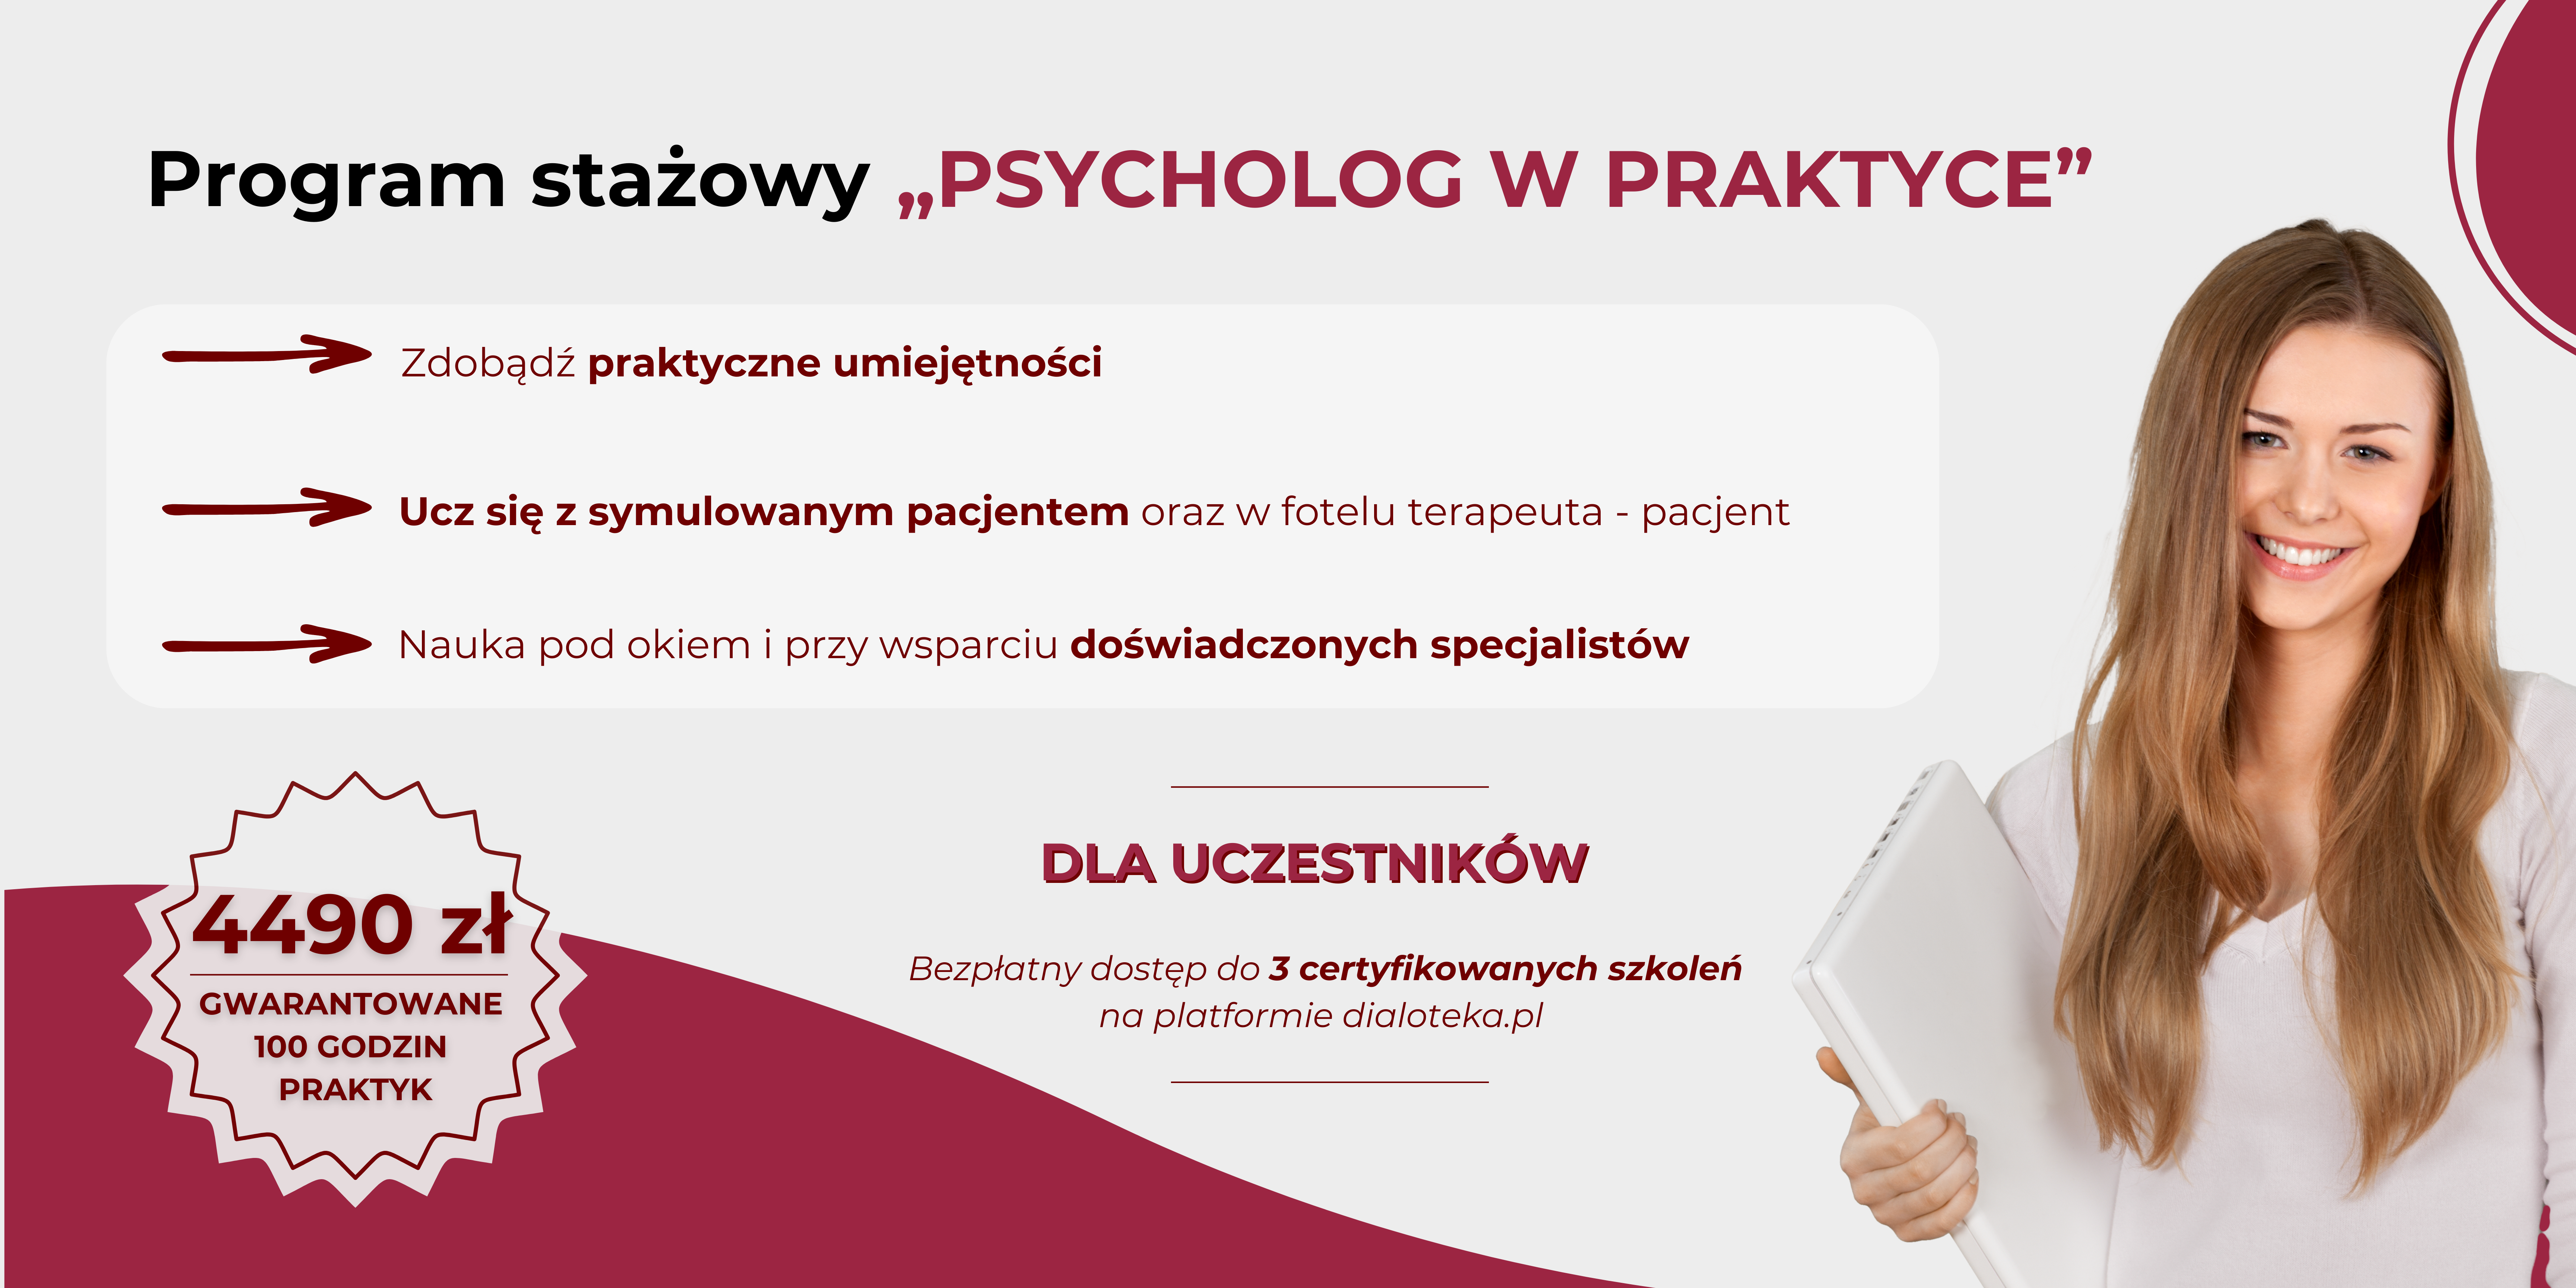 Program stażowy - Psycholog w praktyce